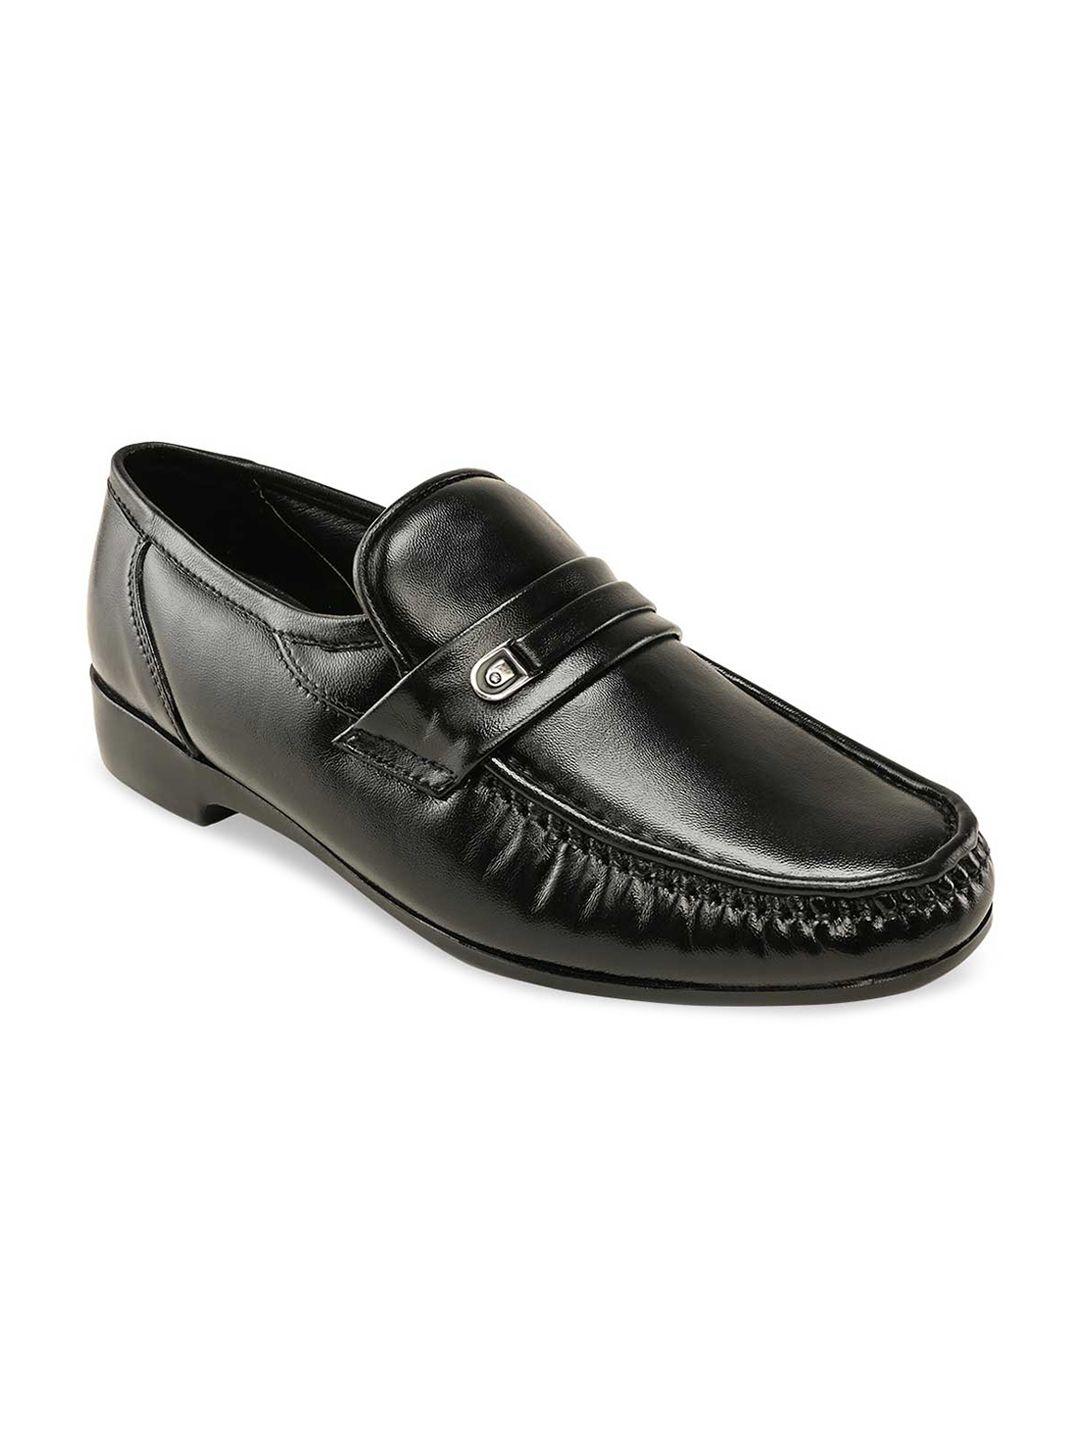 regal-men-black-solid-leather-formal--slip-on-shoes